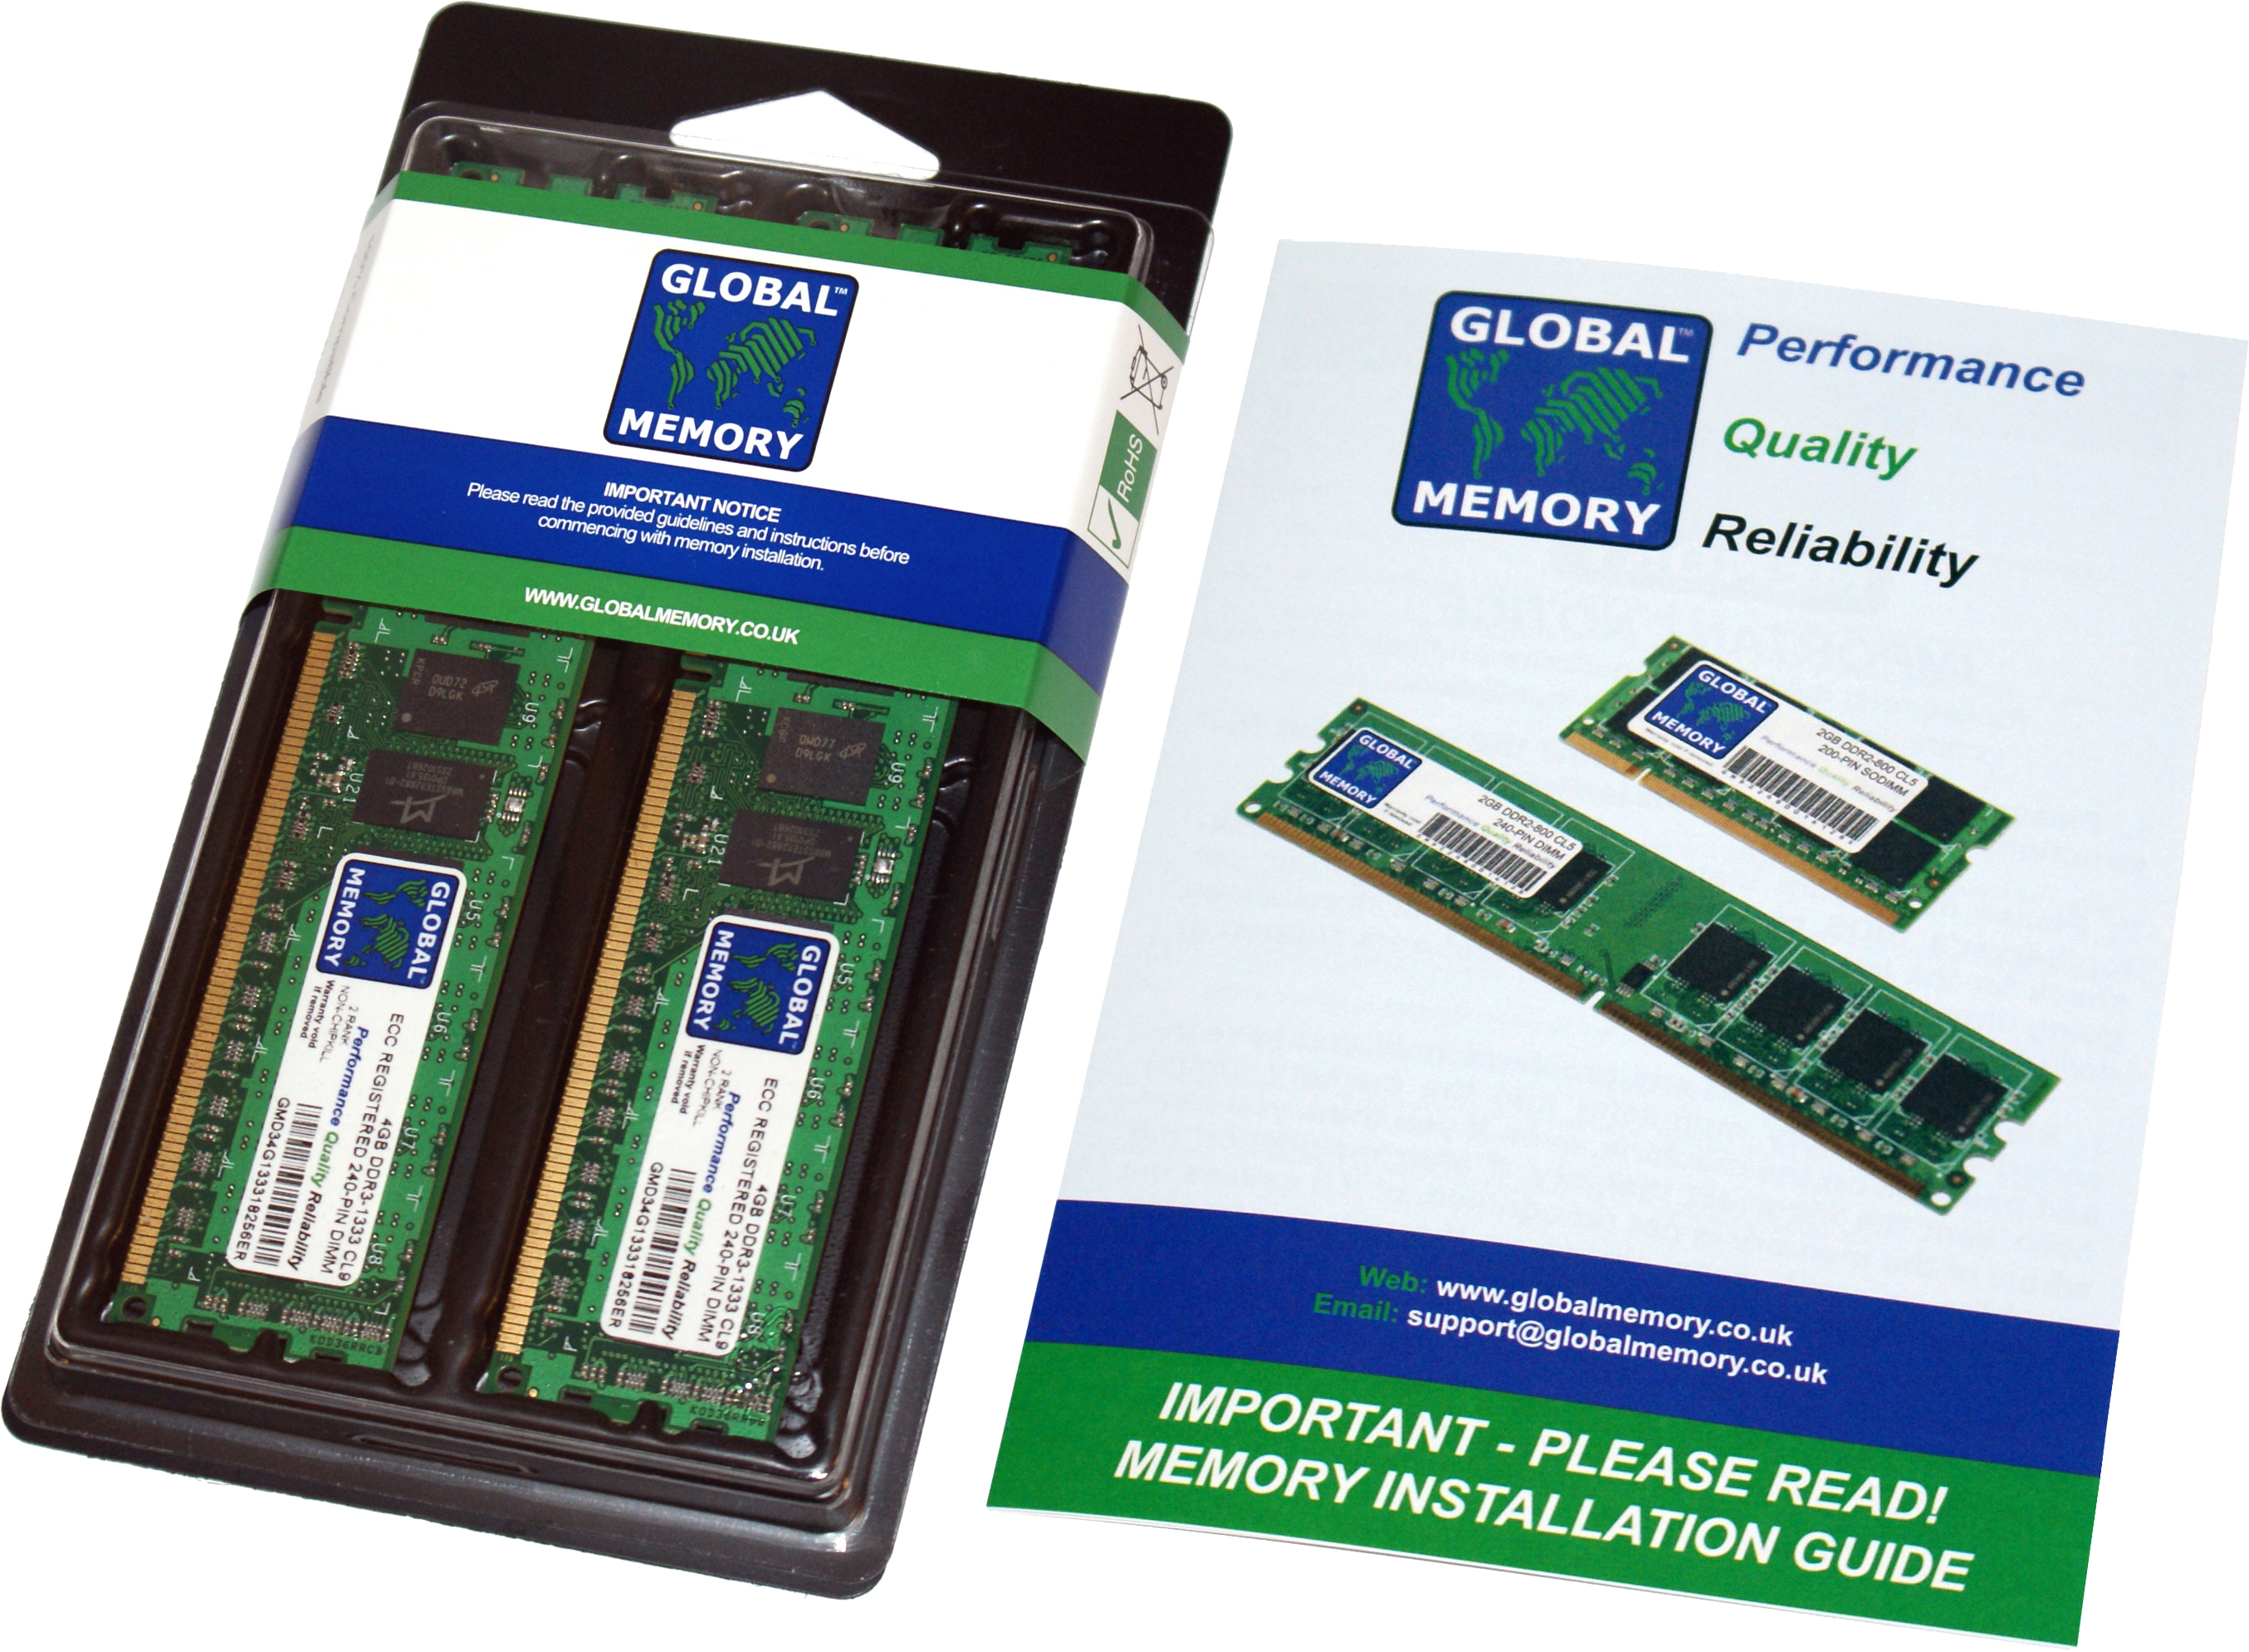 32GB (2 x 16GB) DDR4 2933MHz PC4-23400 288-PIN ECC REGISTERED DIMM (RDIMM) MEMORY RAM KIT FOR HEWLETT-PACKARD SERVERS/WORKSTATIONS (4 RANK KIT CHIPKILL)